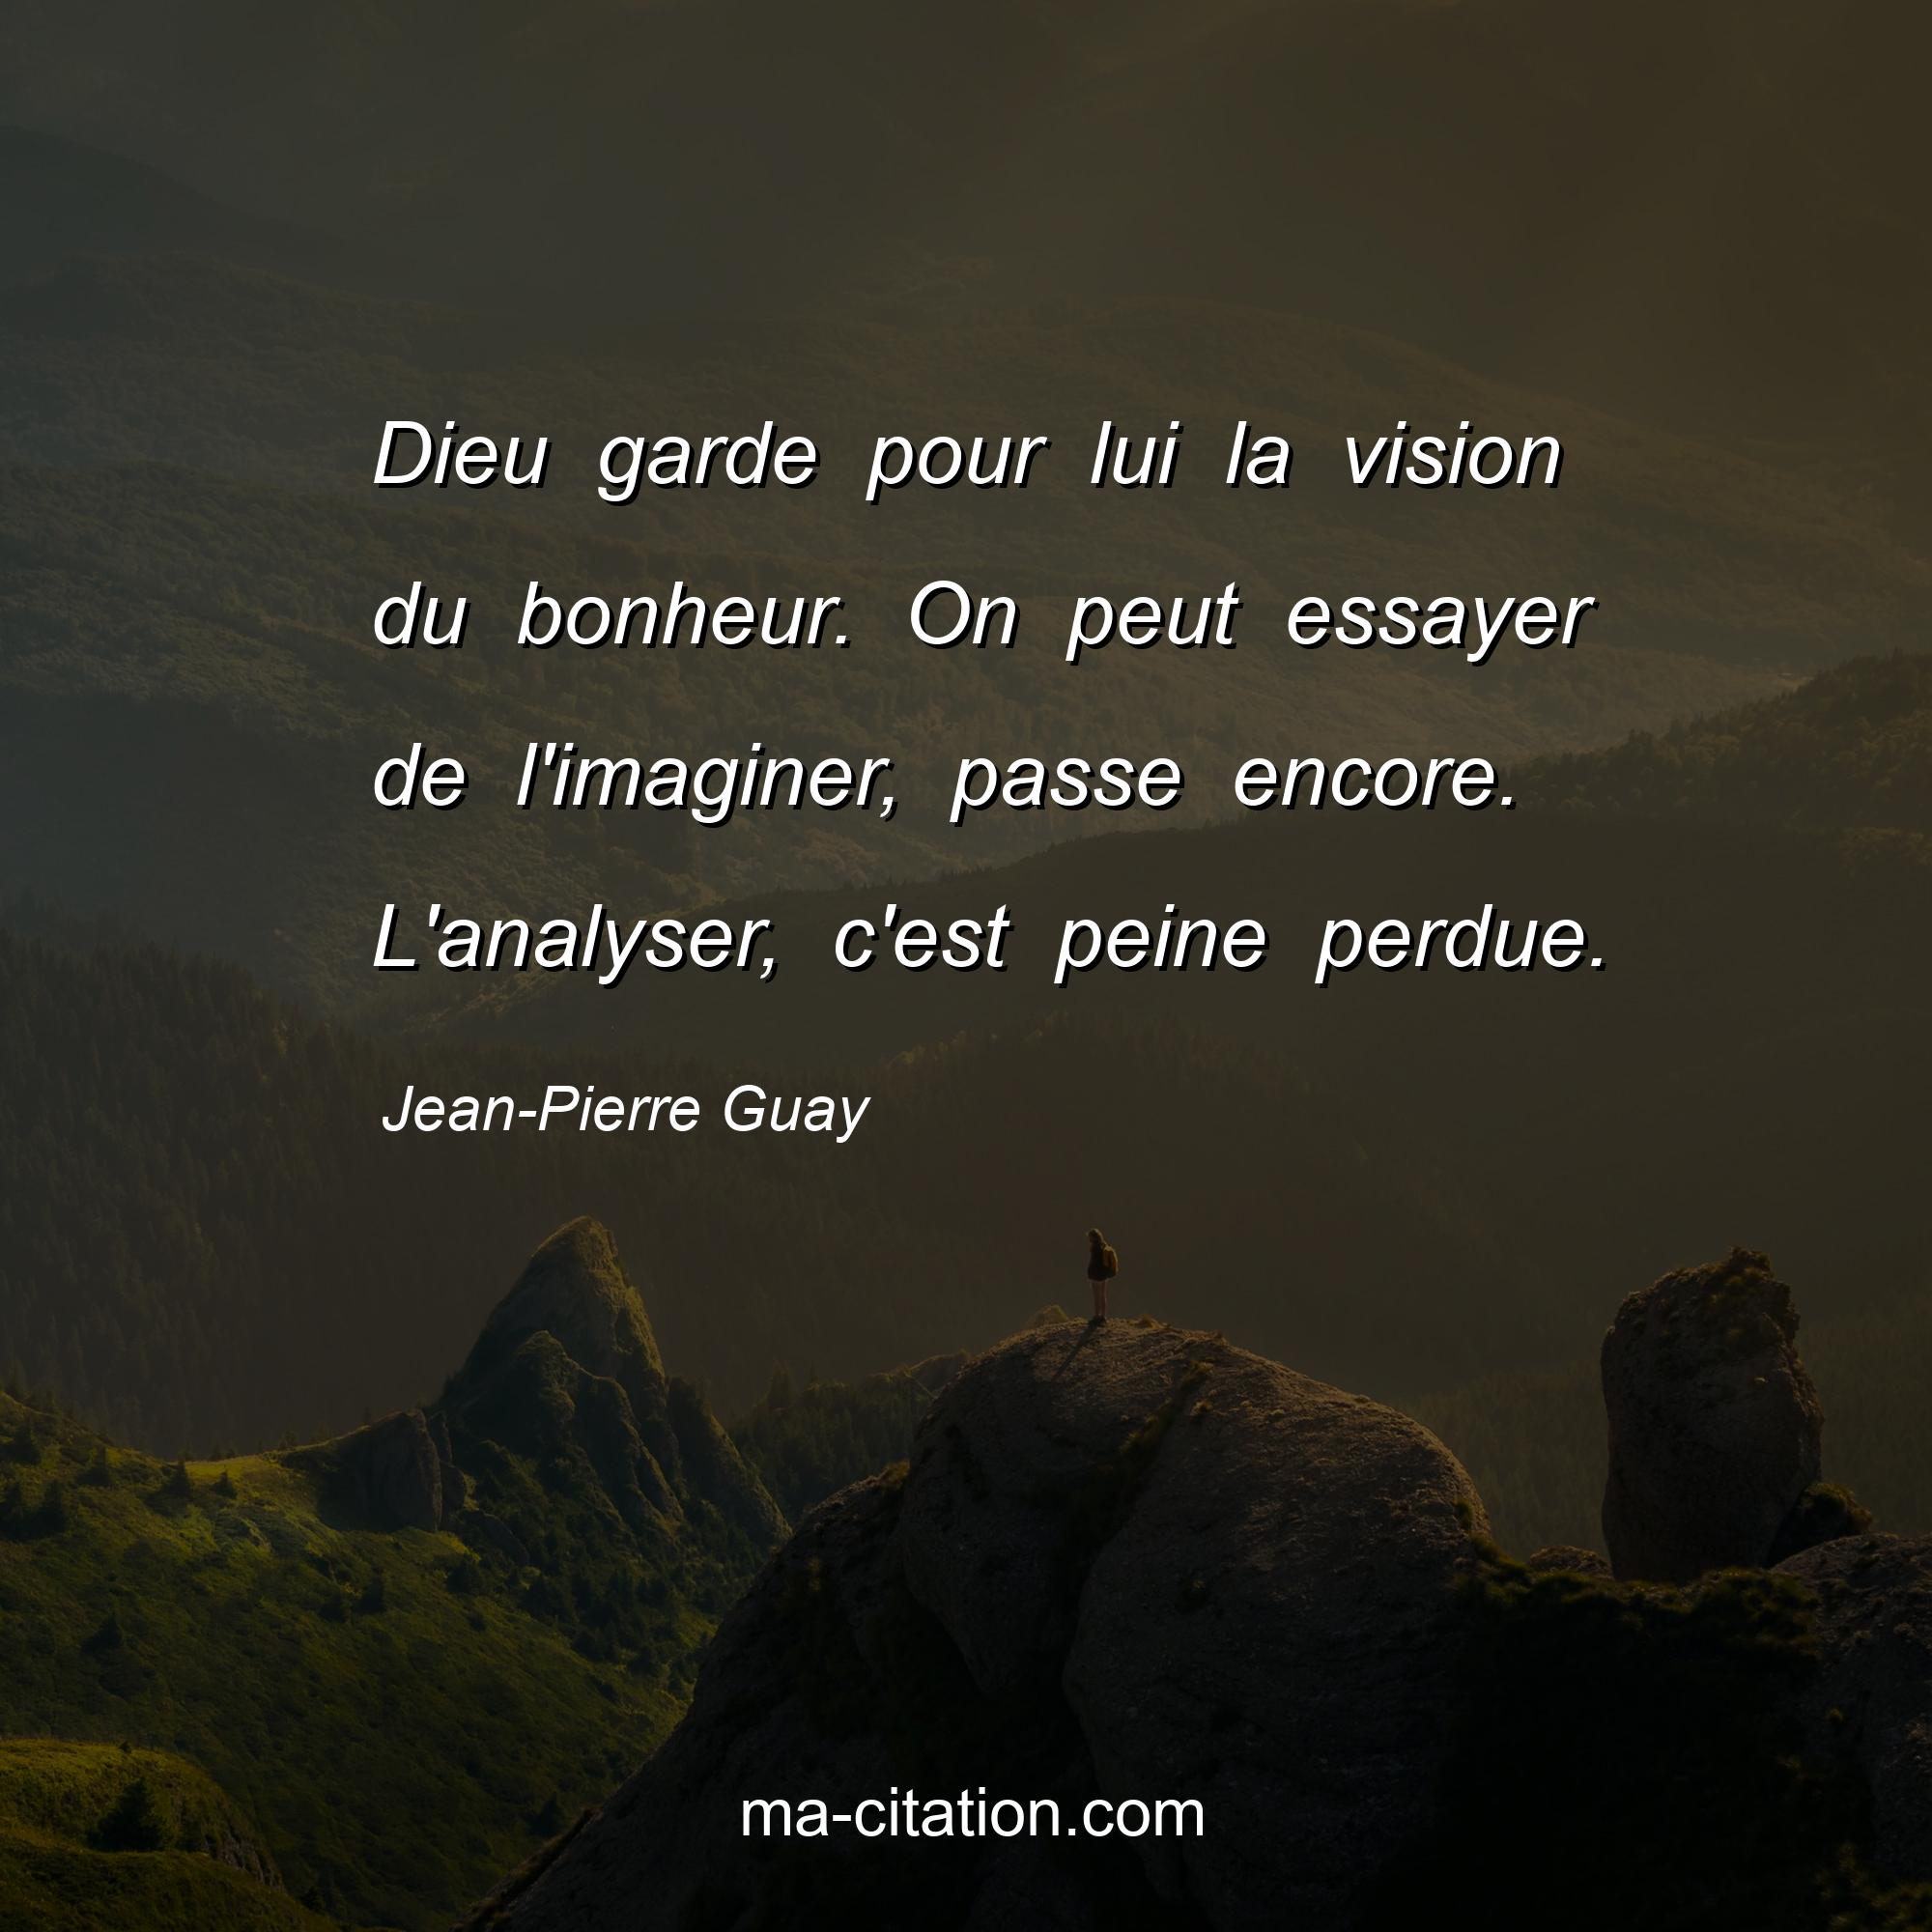 Jean-Pierre Guay : Dieu garde pour lui la vision du bonheur. On peut essayer de l'imaginer, passe encore. L'analyser, c'est peine perdue.